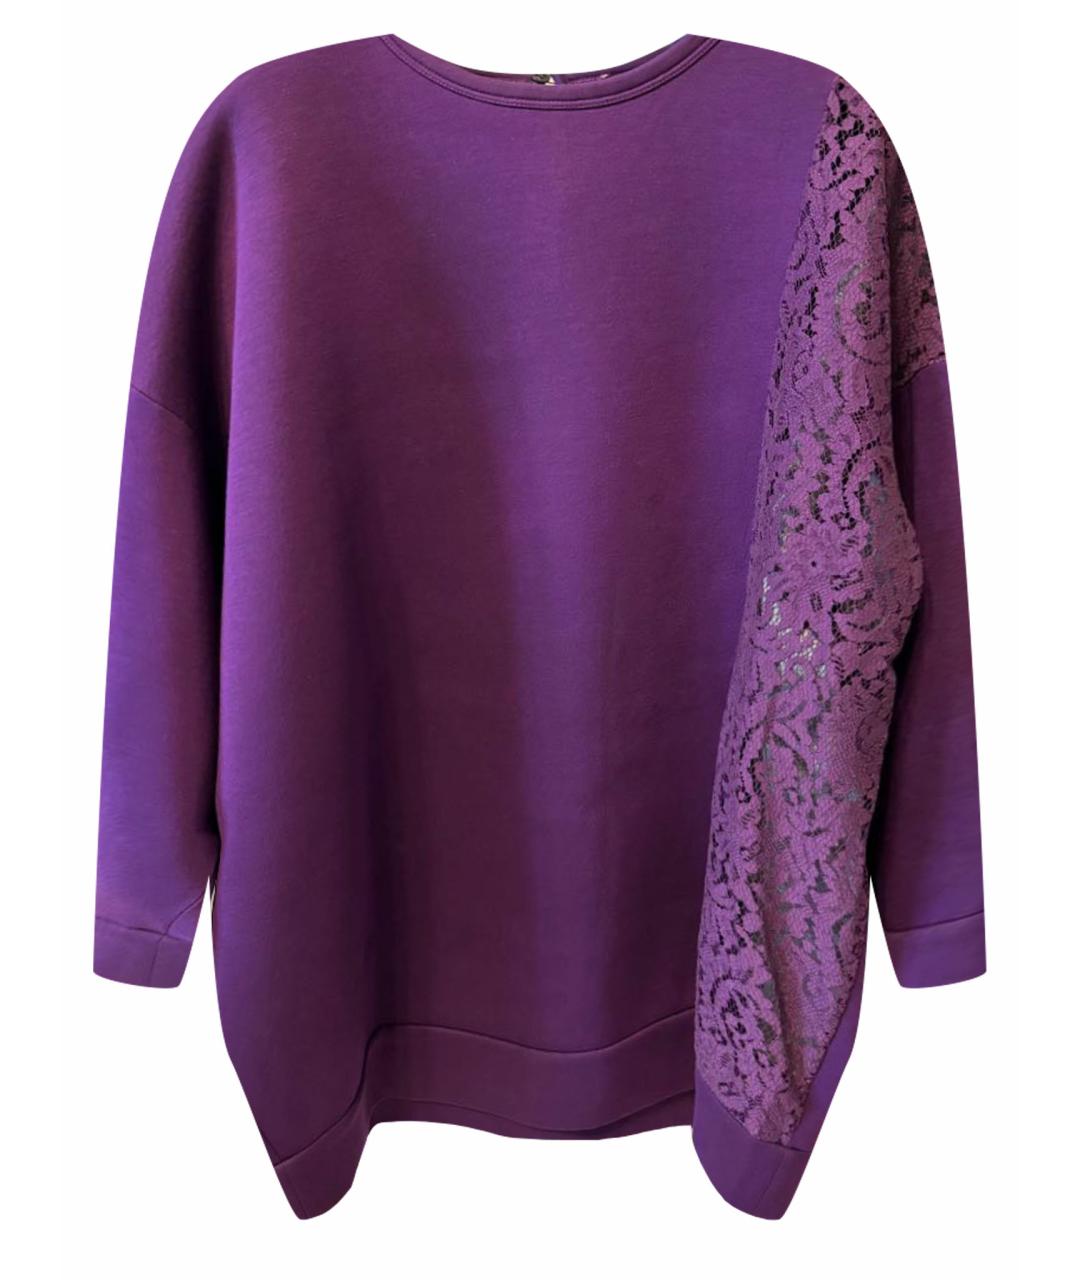 NO. 21 Фиолетовый хлопковый джемпер / свитер, фото 1